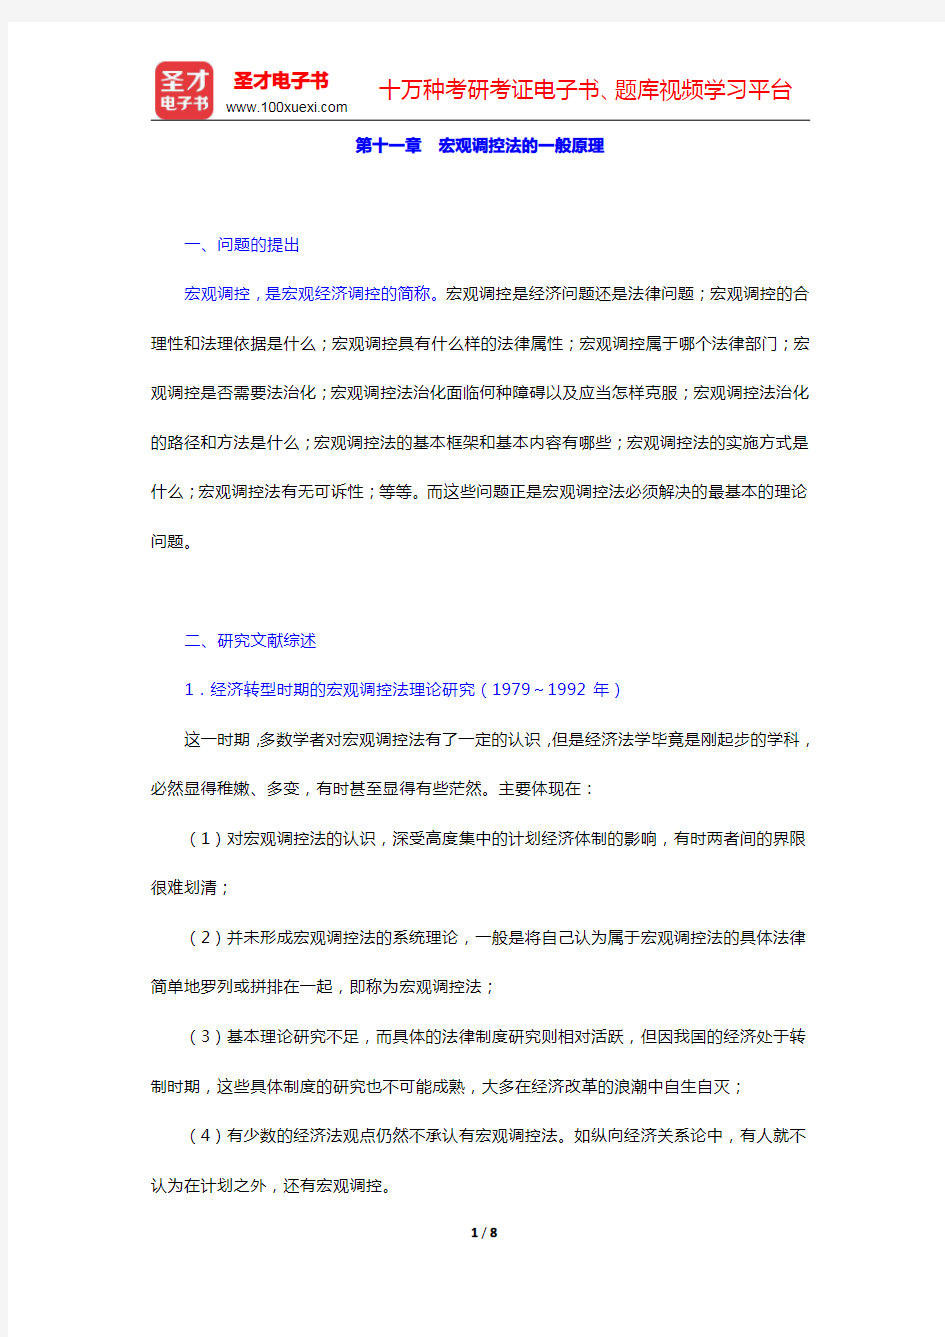 李昌麒《经济法学》-宏观调控法的一般原理复习笔记(圣才出品)